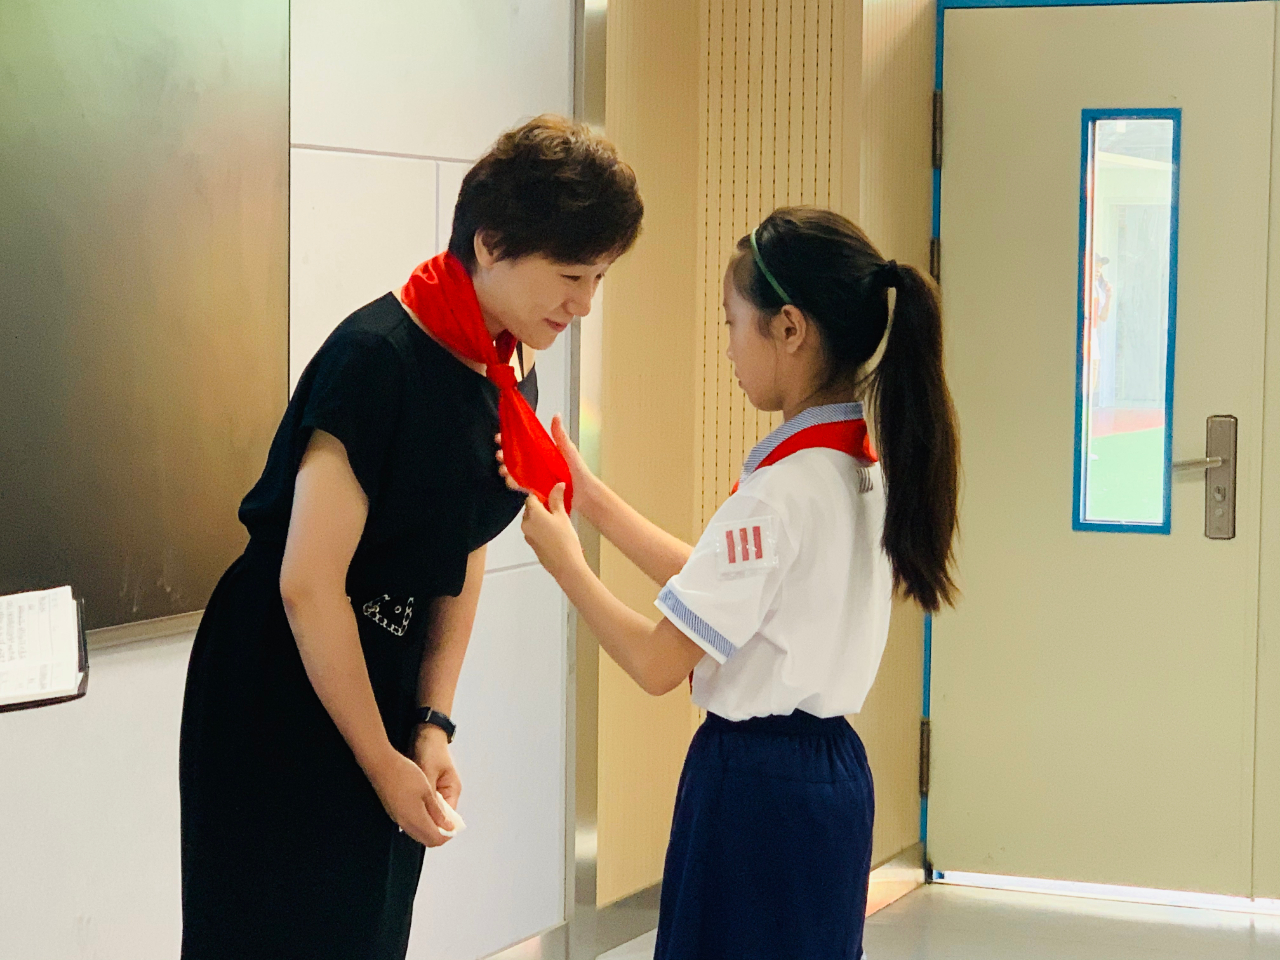 济南师范学校附属小学的学生代表为李林峻佩戴红领巾